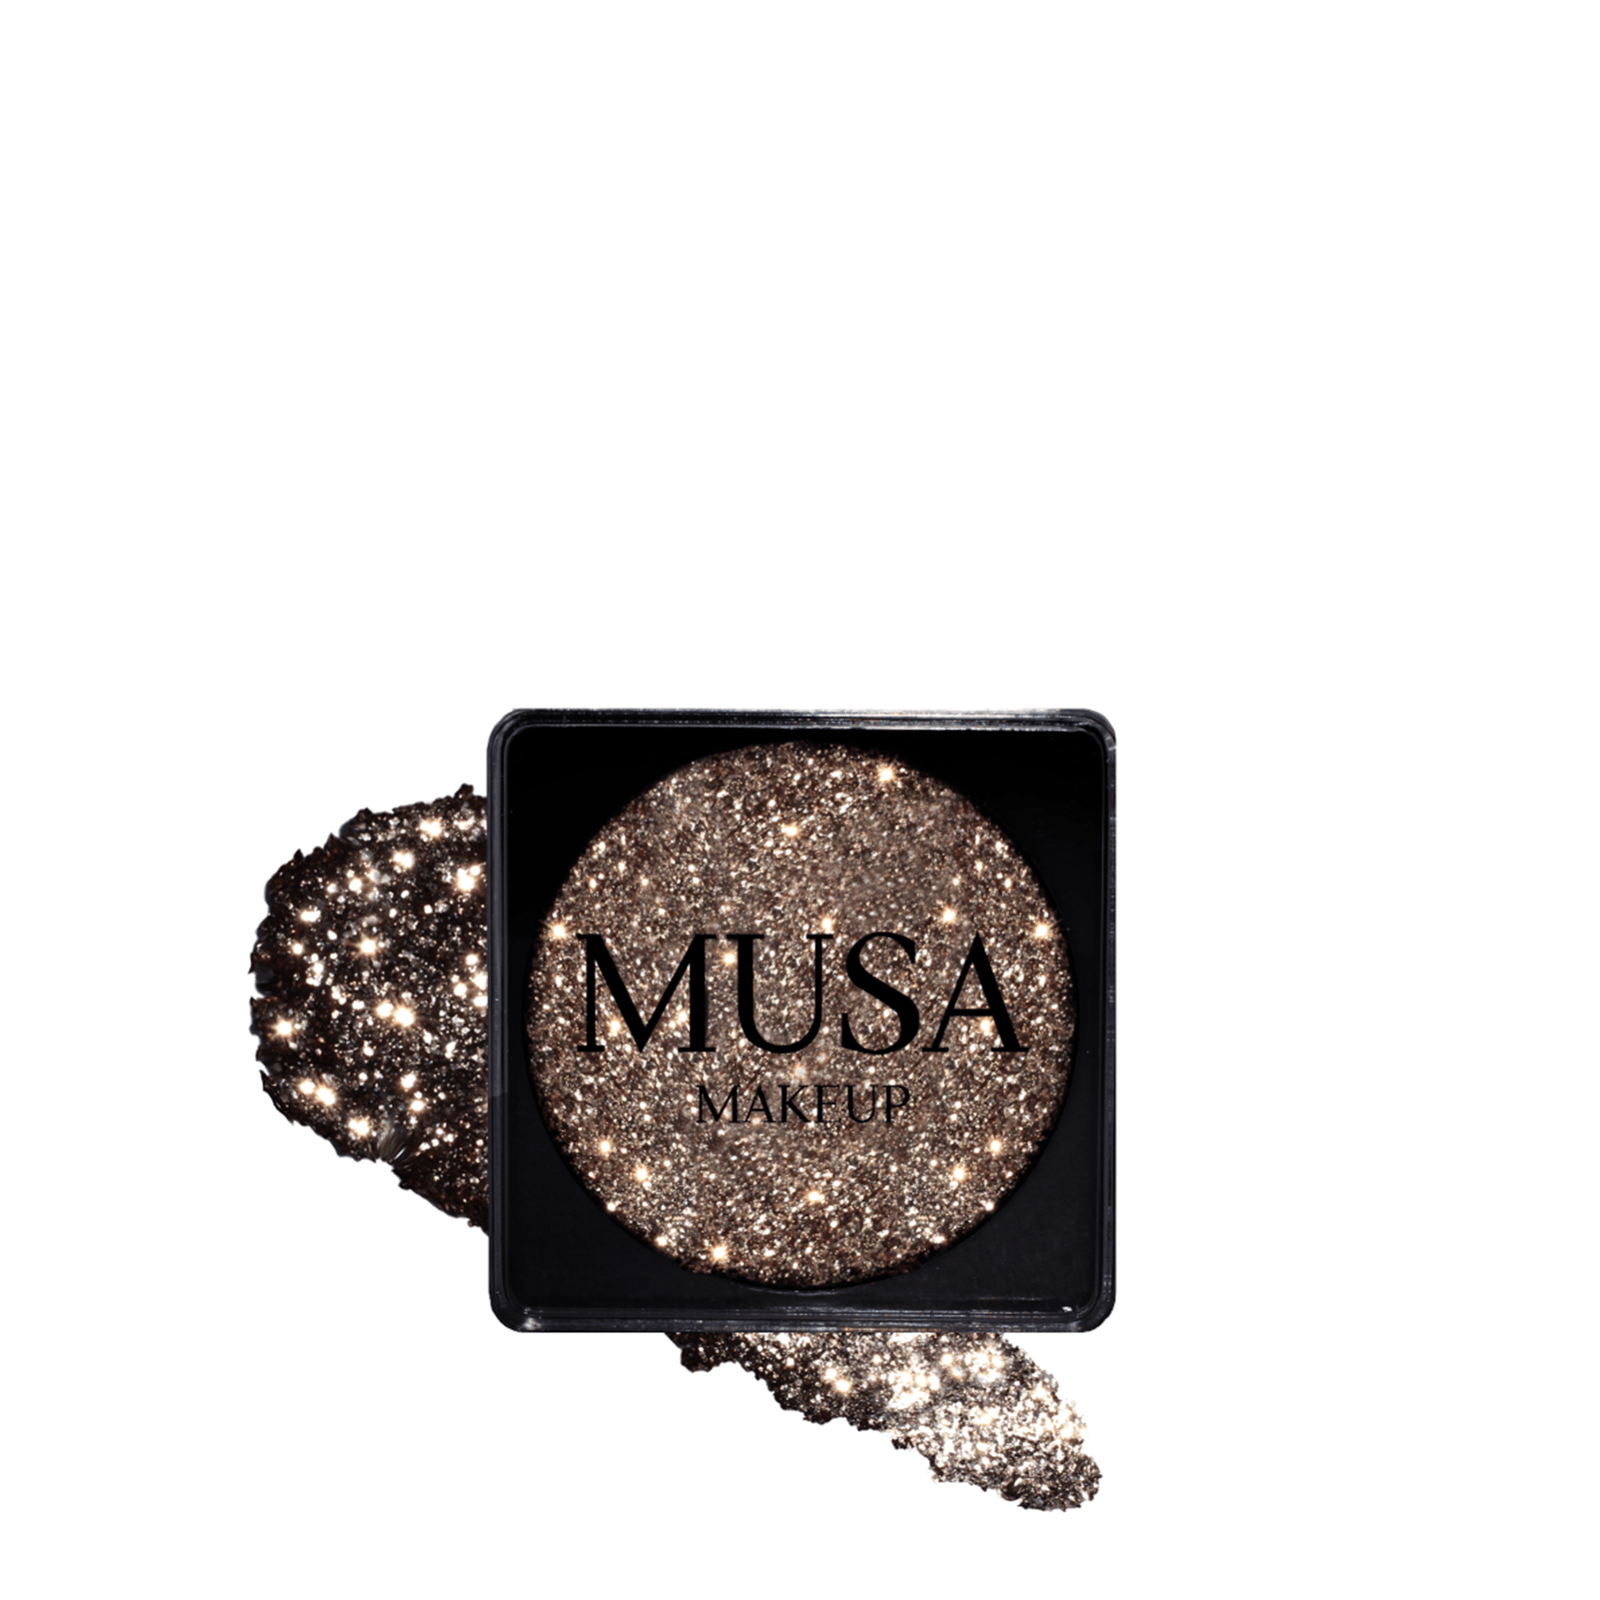 MUSA Makeup Creamy Glitter Atena 4g